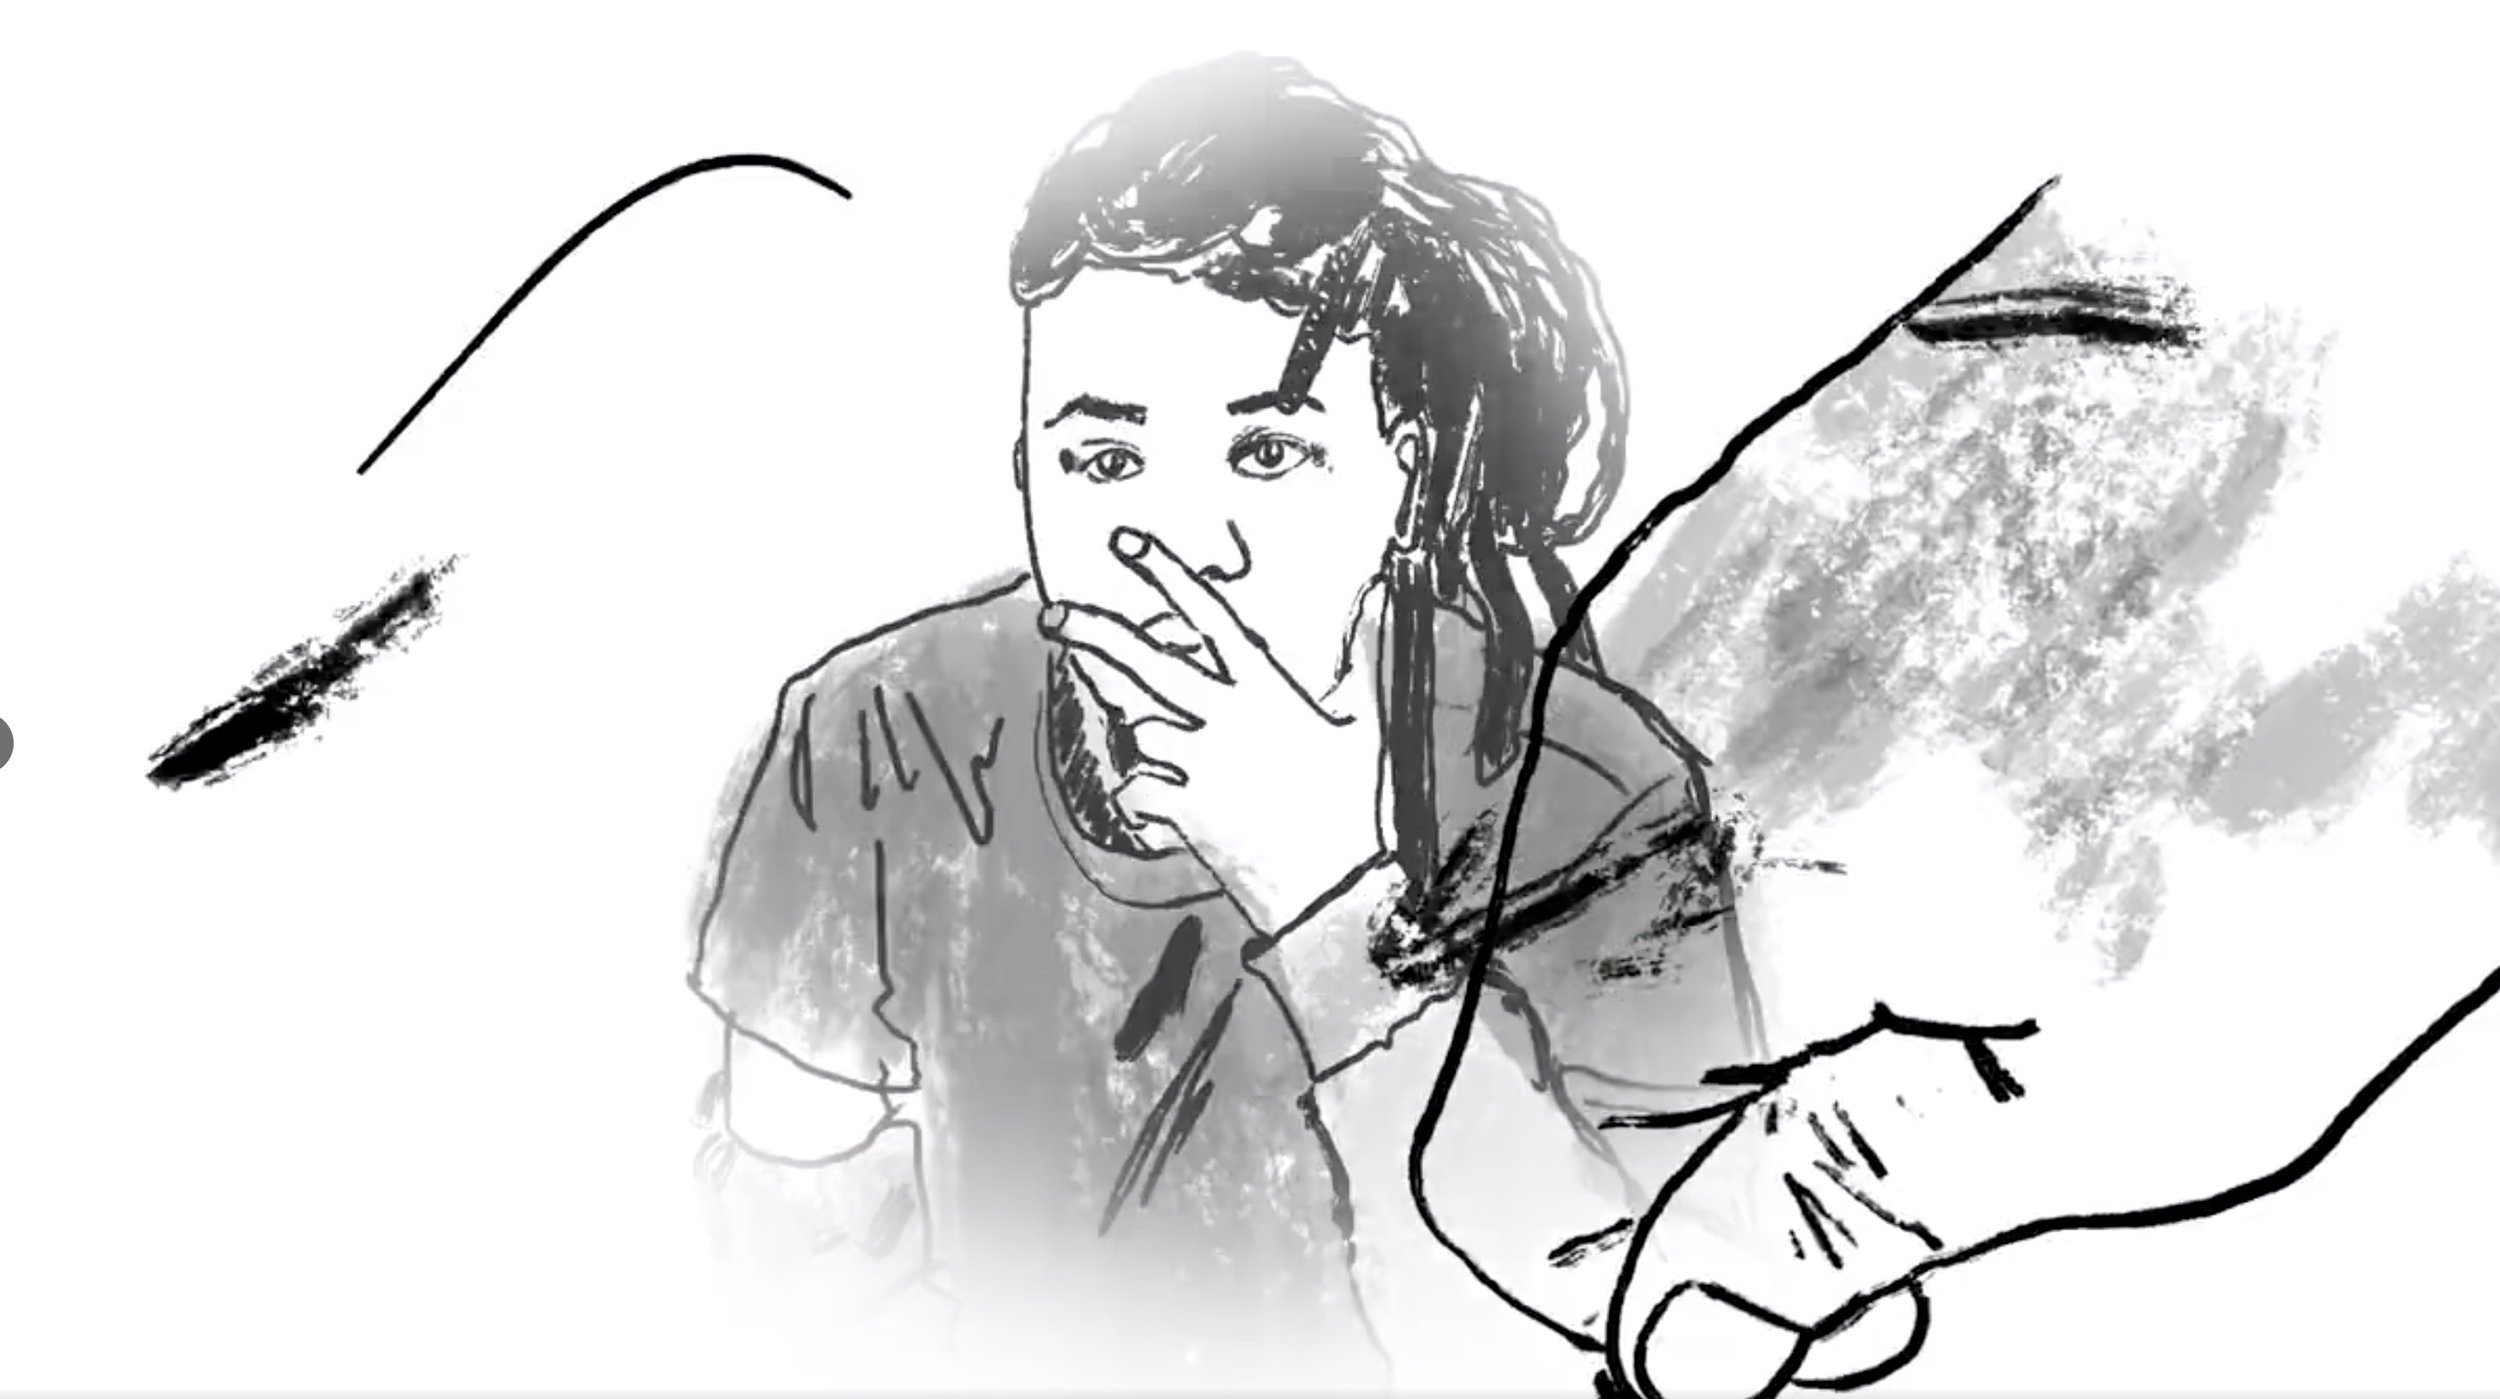 Hand Drawn Animation :: Kilamanzego Sample Pack promo video